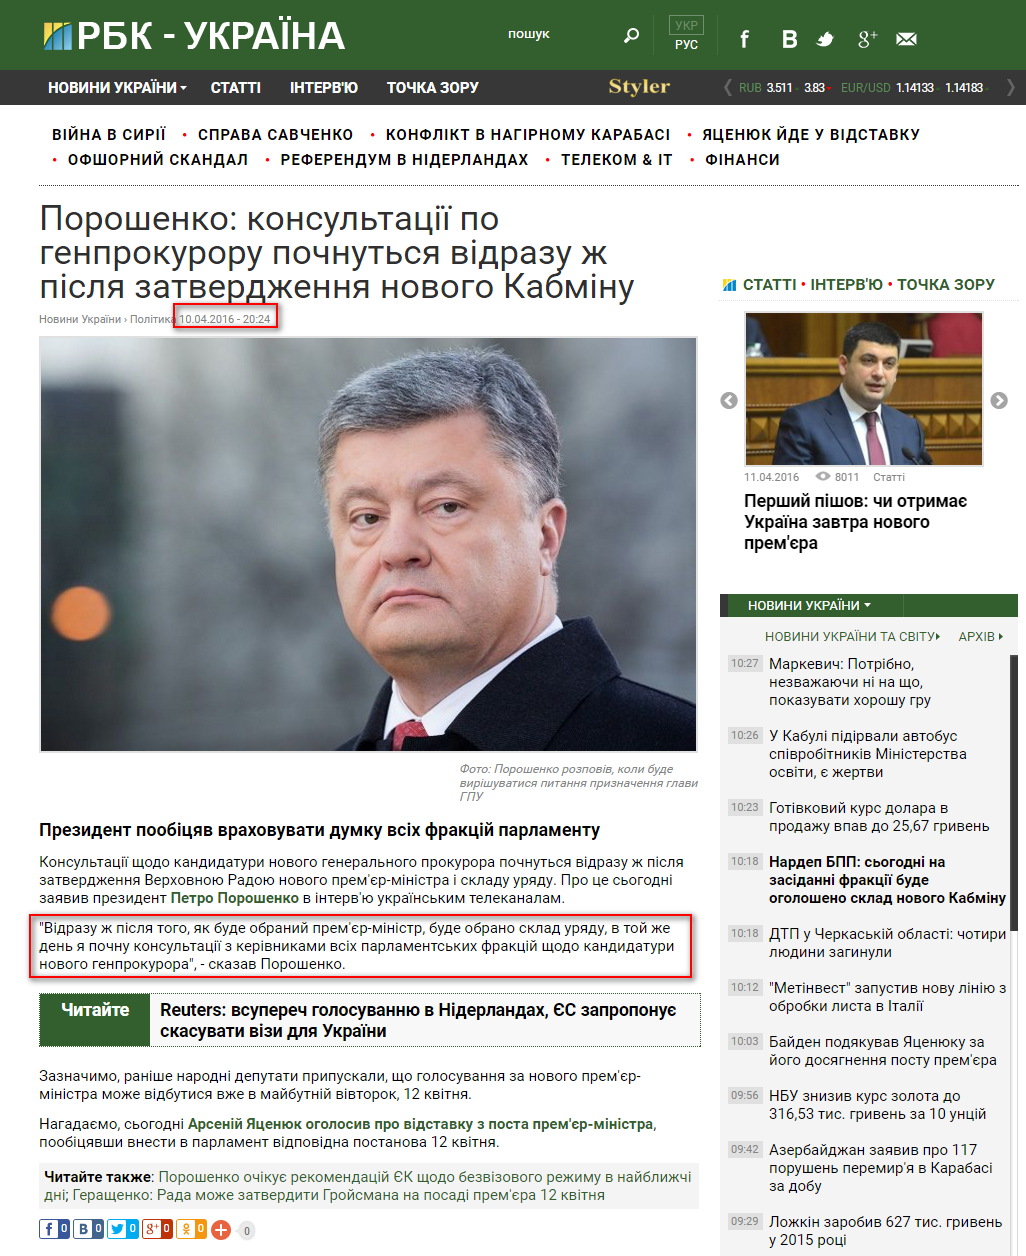 https://www.rbc.ua/ukr/news/poroshenko-konsultatsii-genprokuroru-nachnutsya-1460309088.html